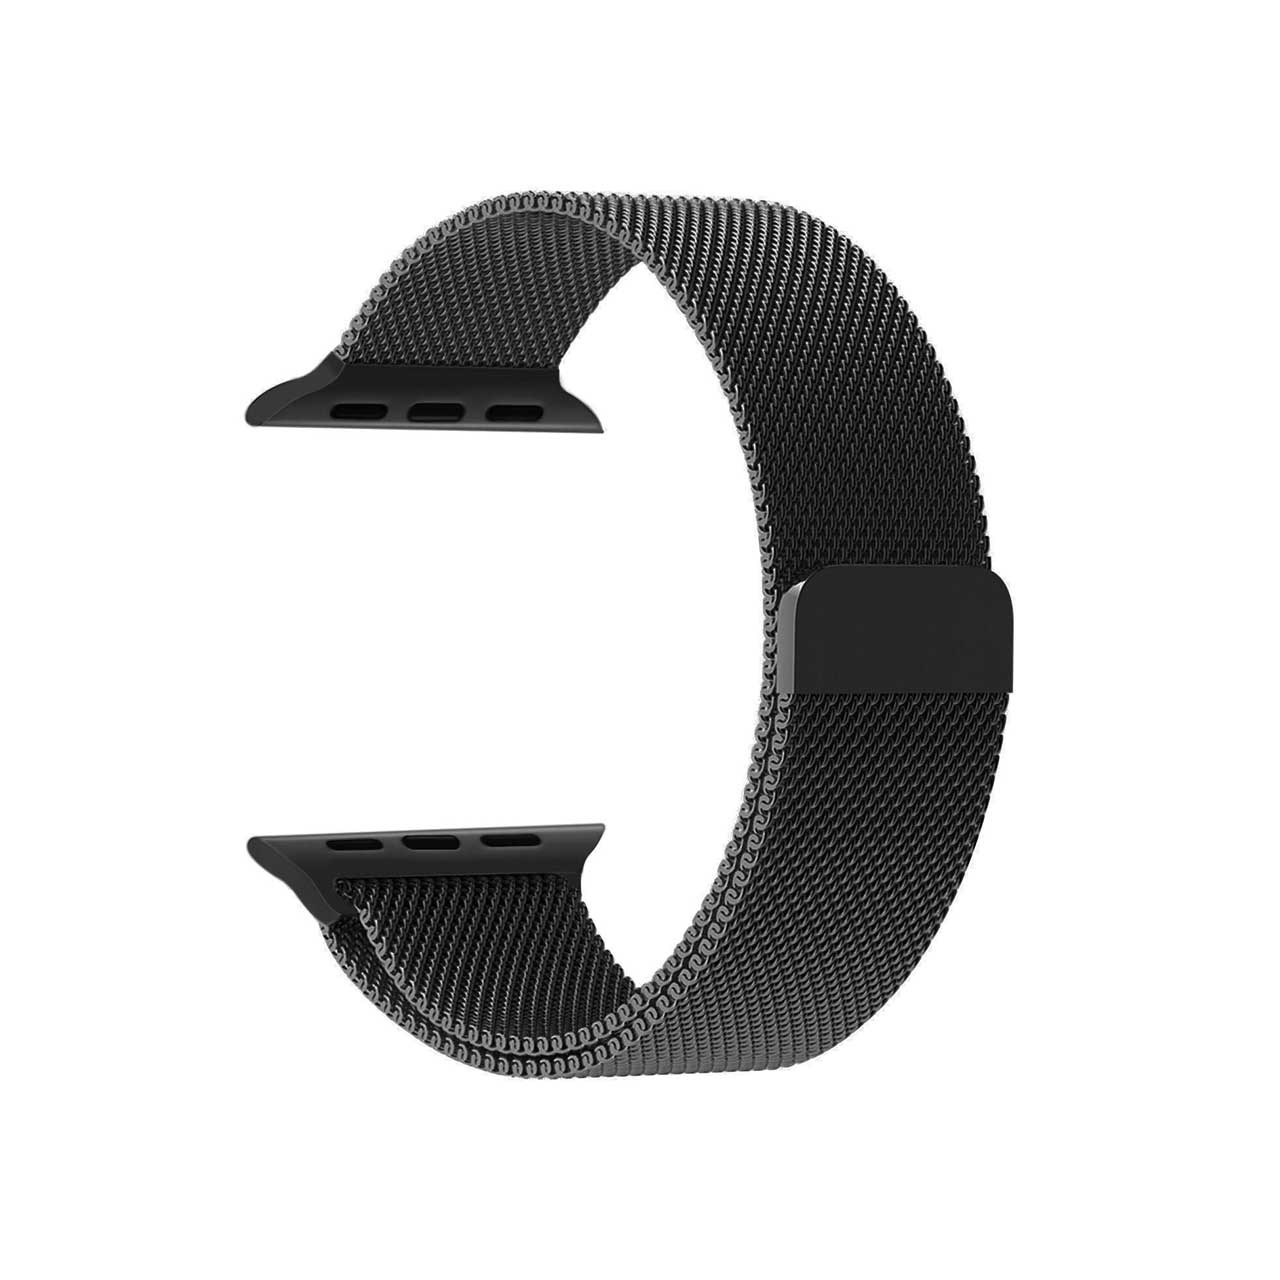 بند فلزی زینکوکو  مدل Milanese Loop مناسب برای اپل واچ 38 میلی متری